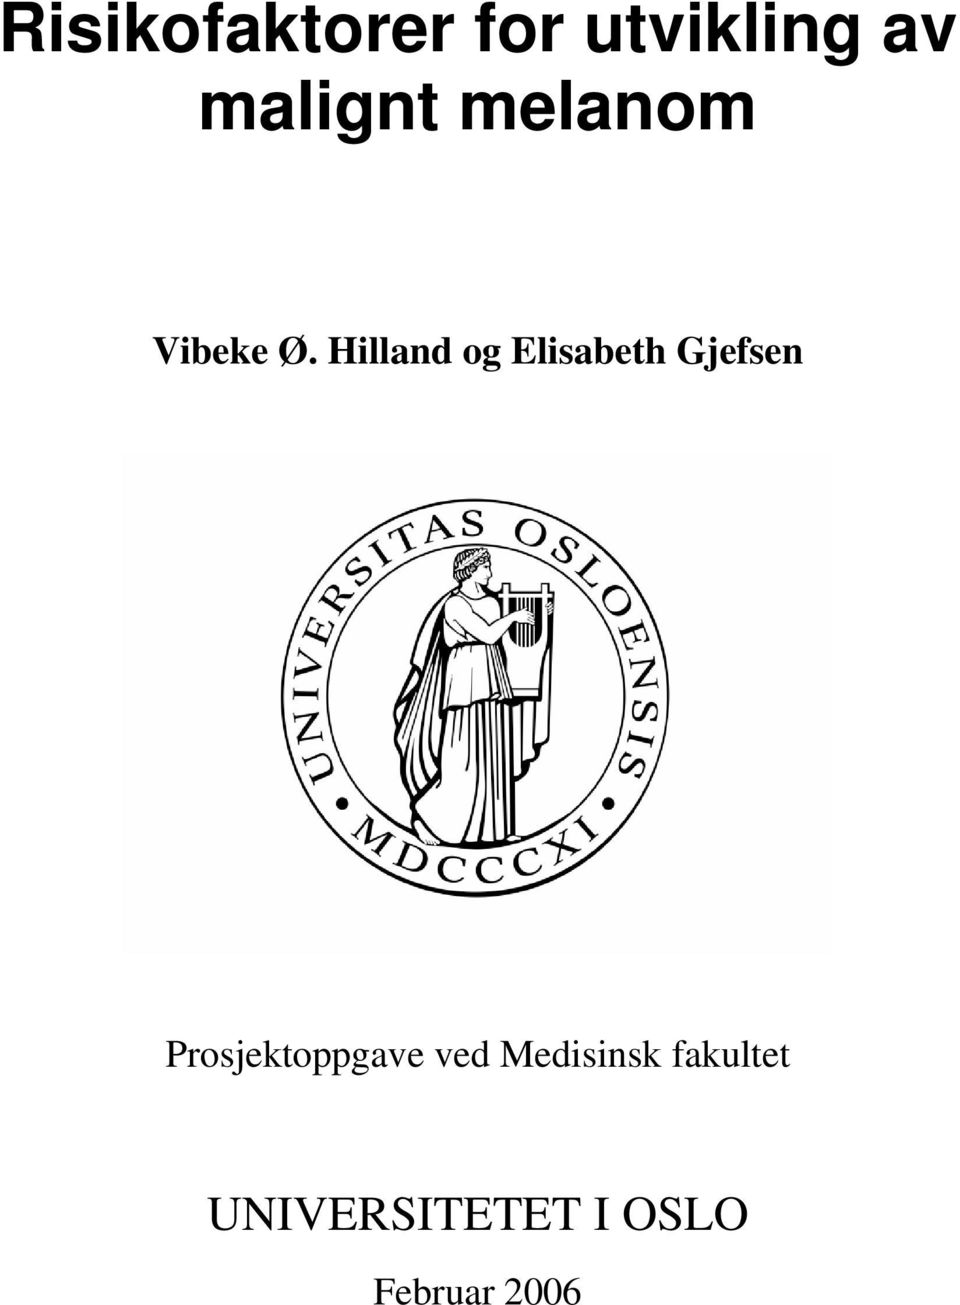 Hilland og Elisabeth Gjefsen